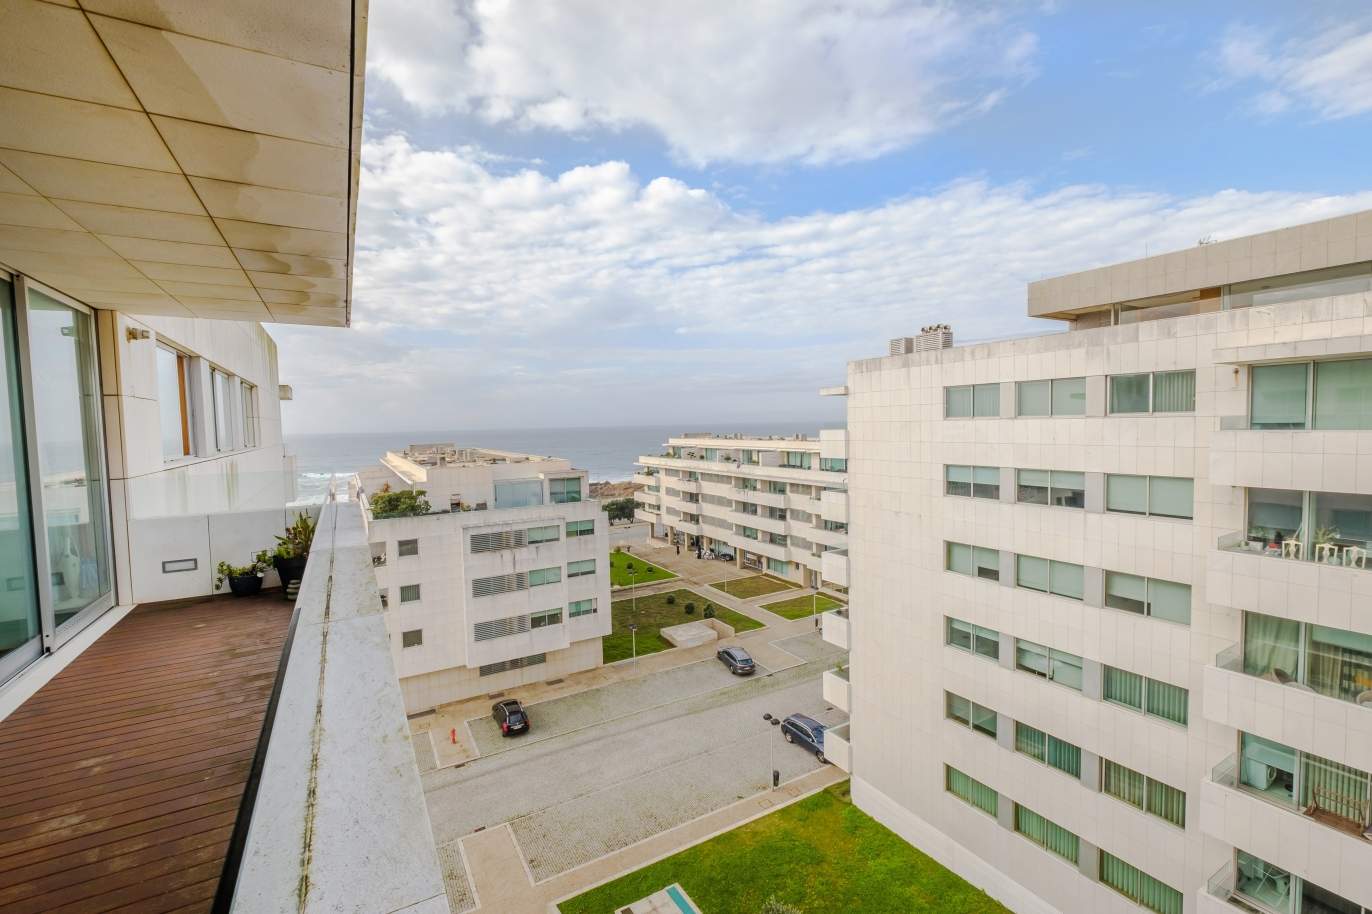 Venda de apartamento moderno, com vistas mar, Leça da Palmeira, Porto_156133